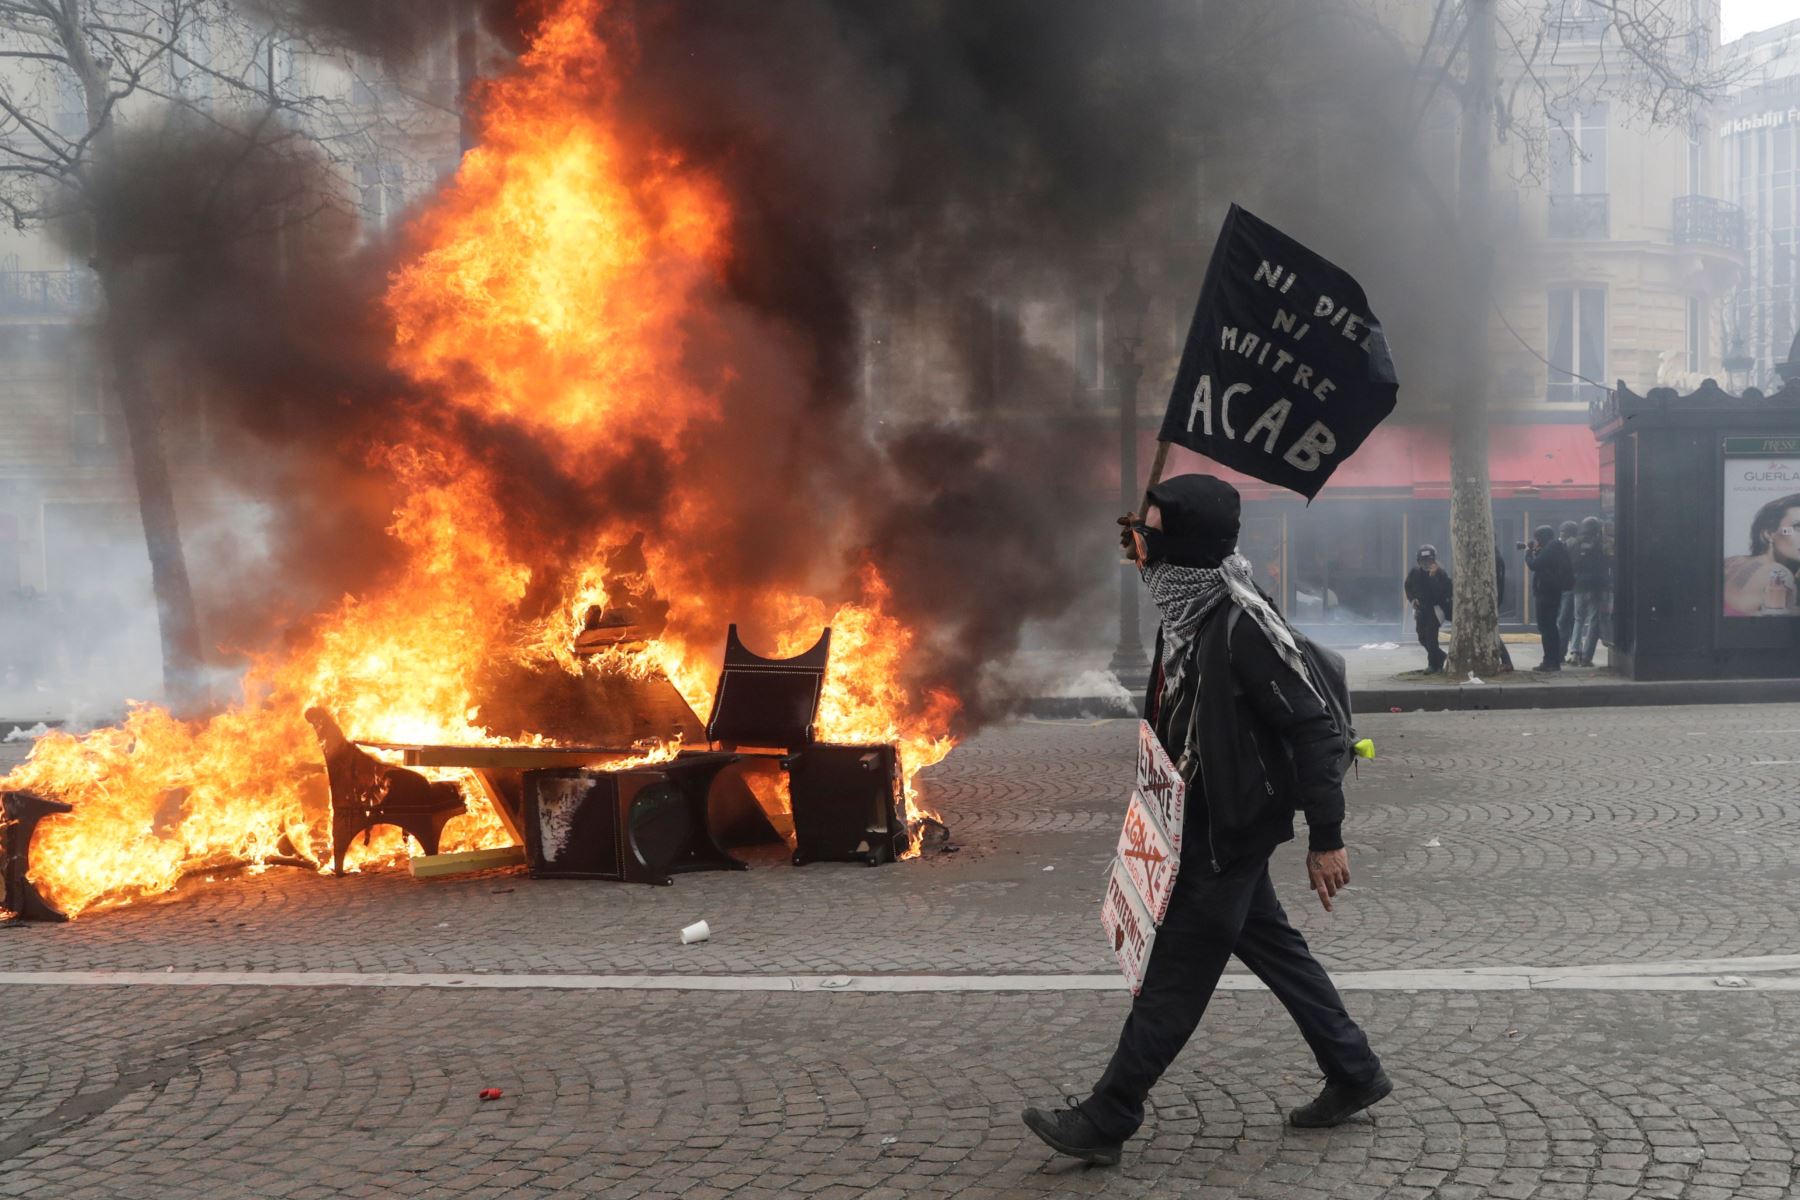 Foto de archivo del 16 de marzo de 2019, muestra a un manifestante pasa junto a una barricada en llamas durante los enfrentamientos con la policía antidisturbios en los Campos Elíseos de París. Foto: AFP